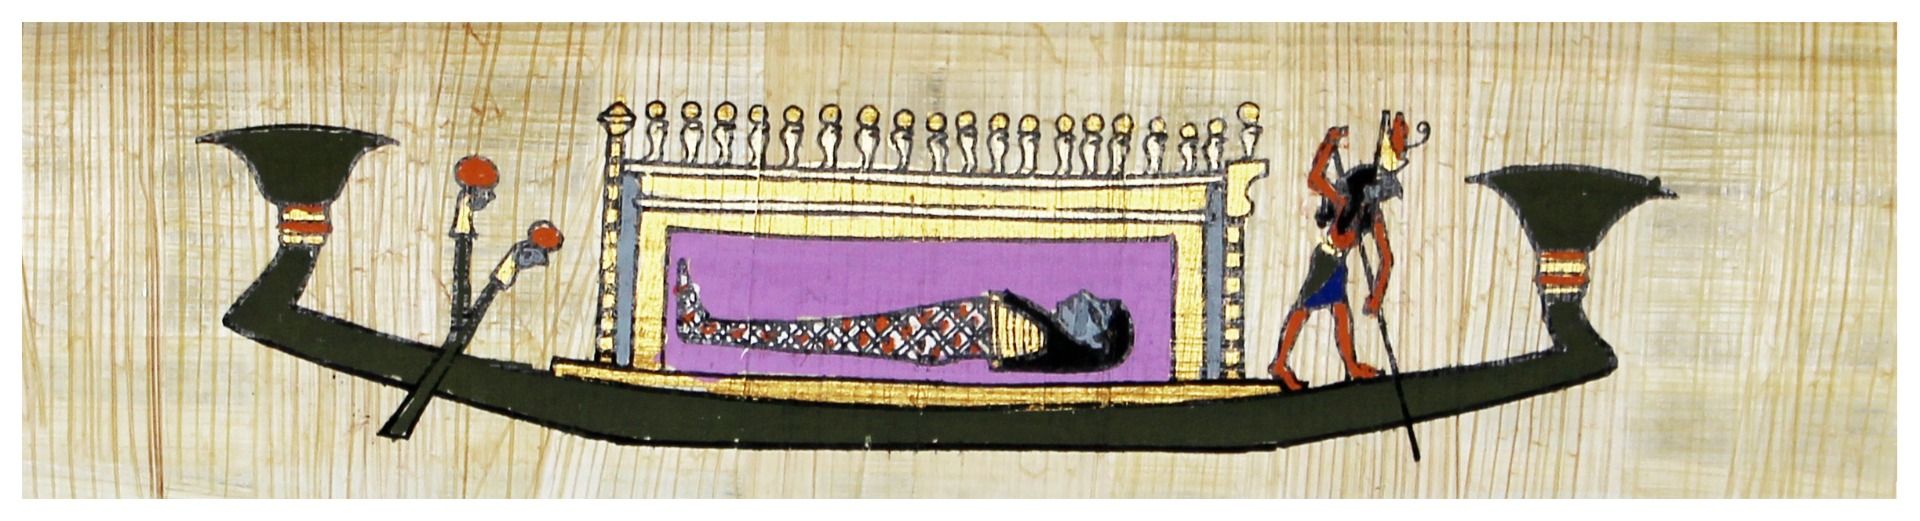 Papyrus Lesezeichen - Sonnenbarke bemalt